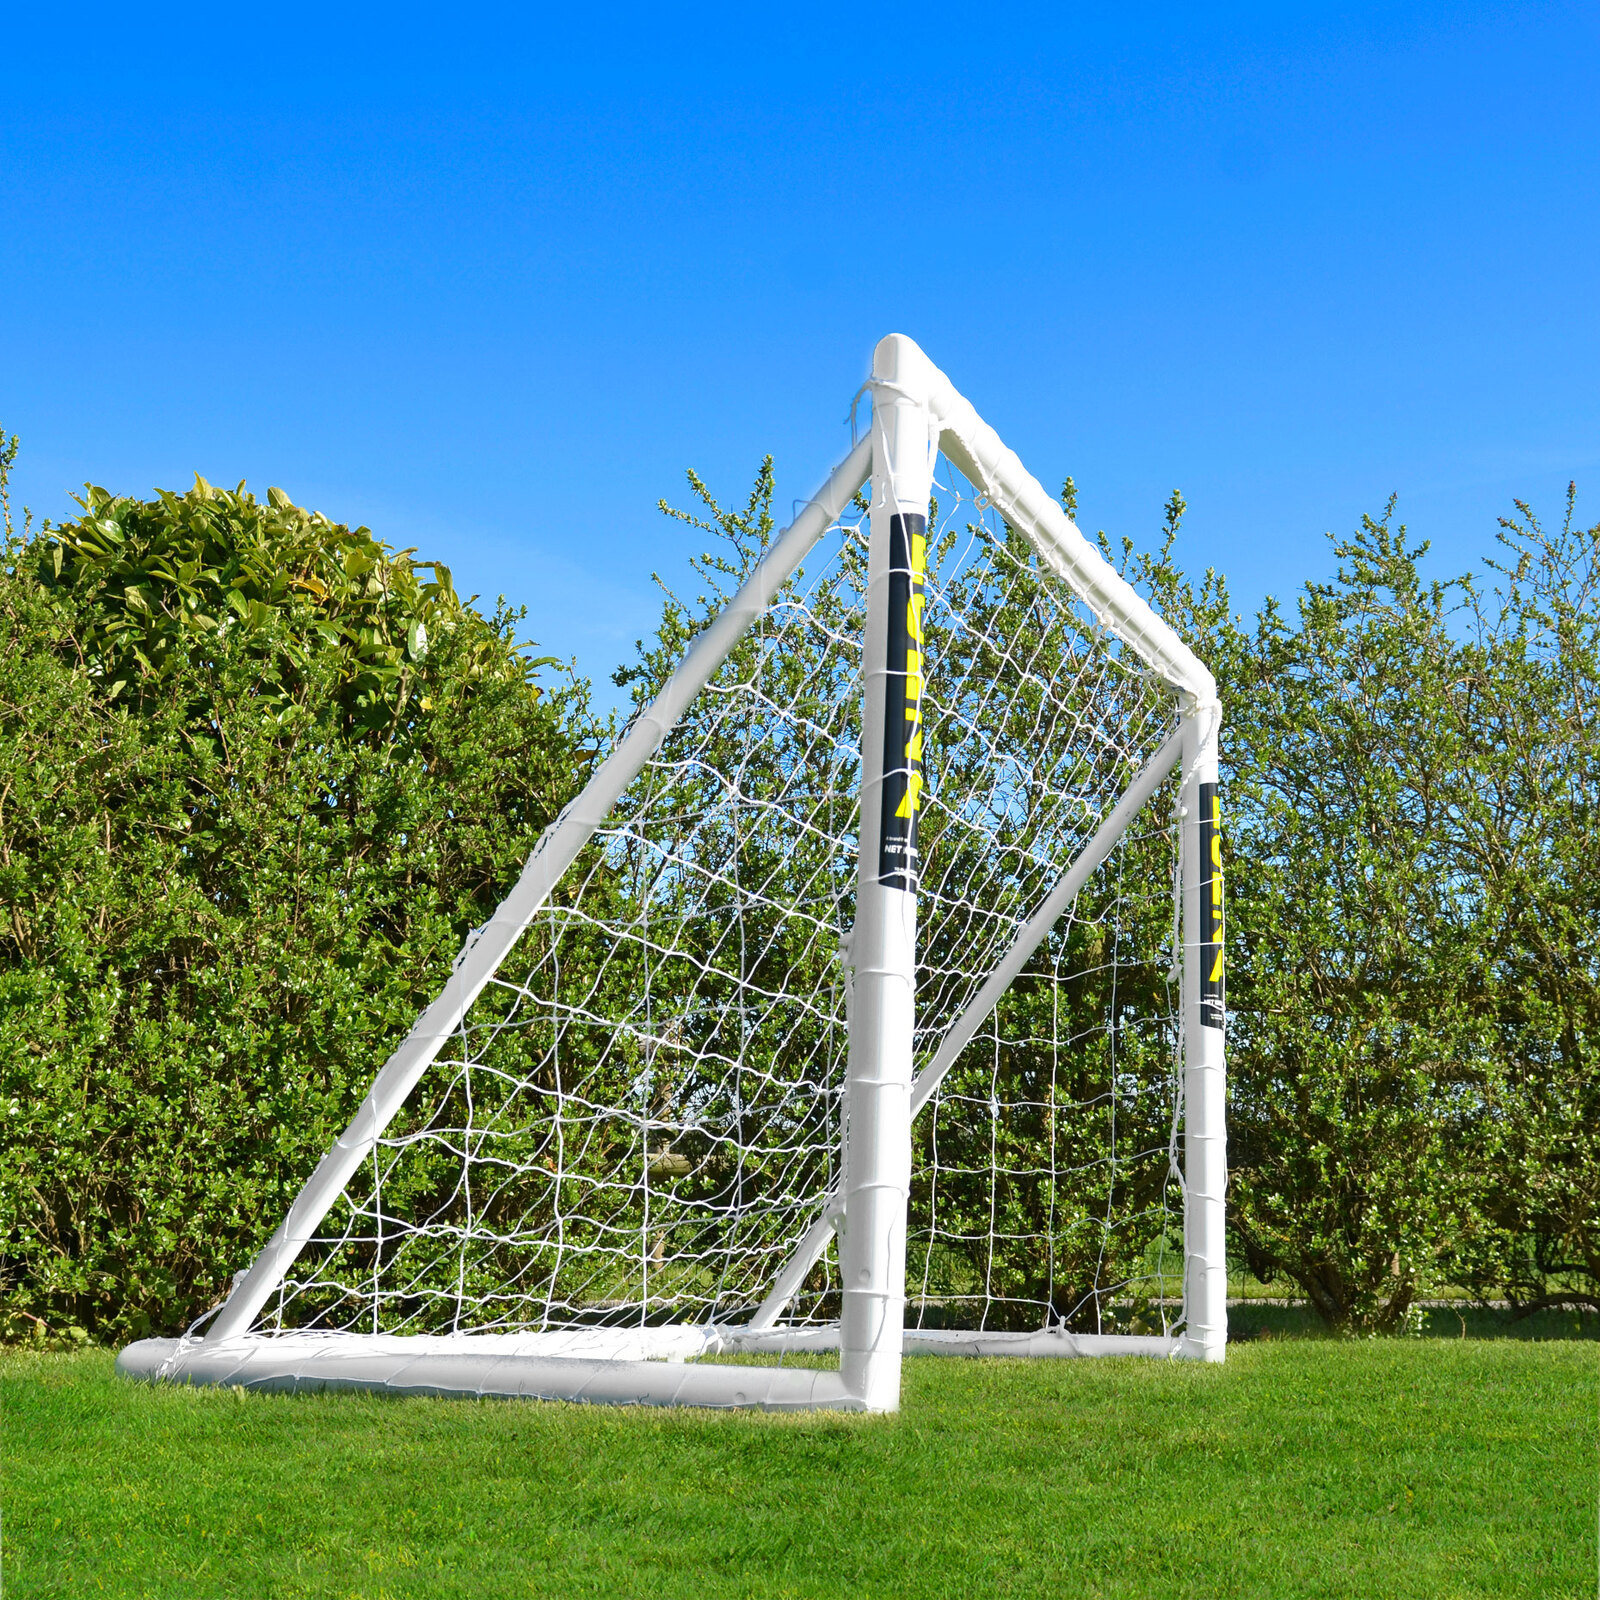 1.8m x 1.2m CAZNA Soccer Goal Post